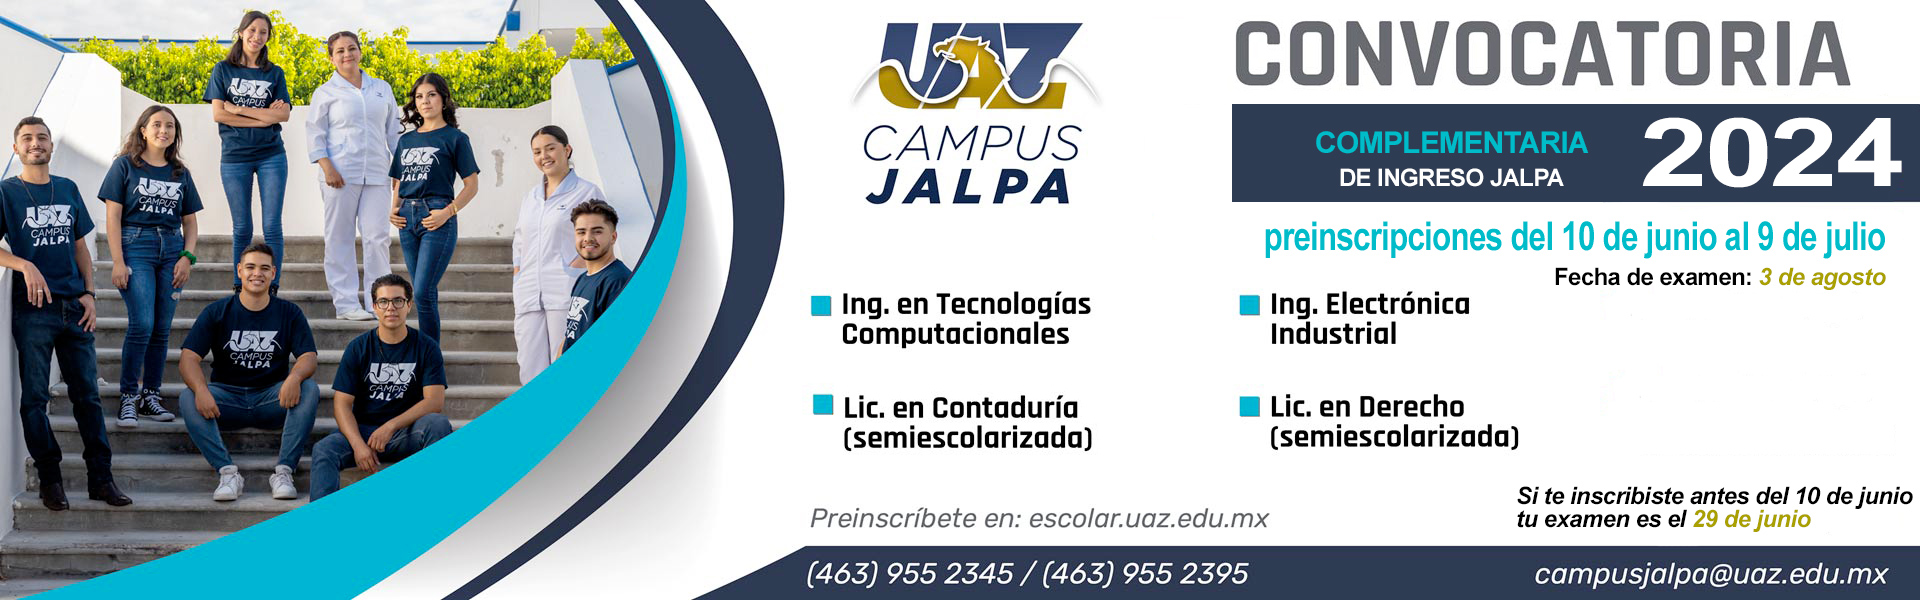 Campus Jalpa Convocatoria de Ingreso